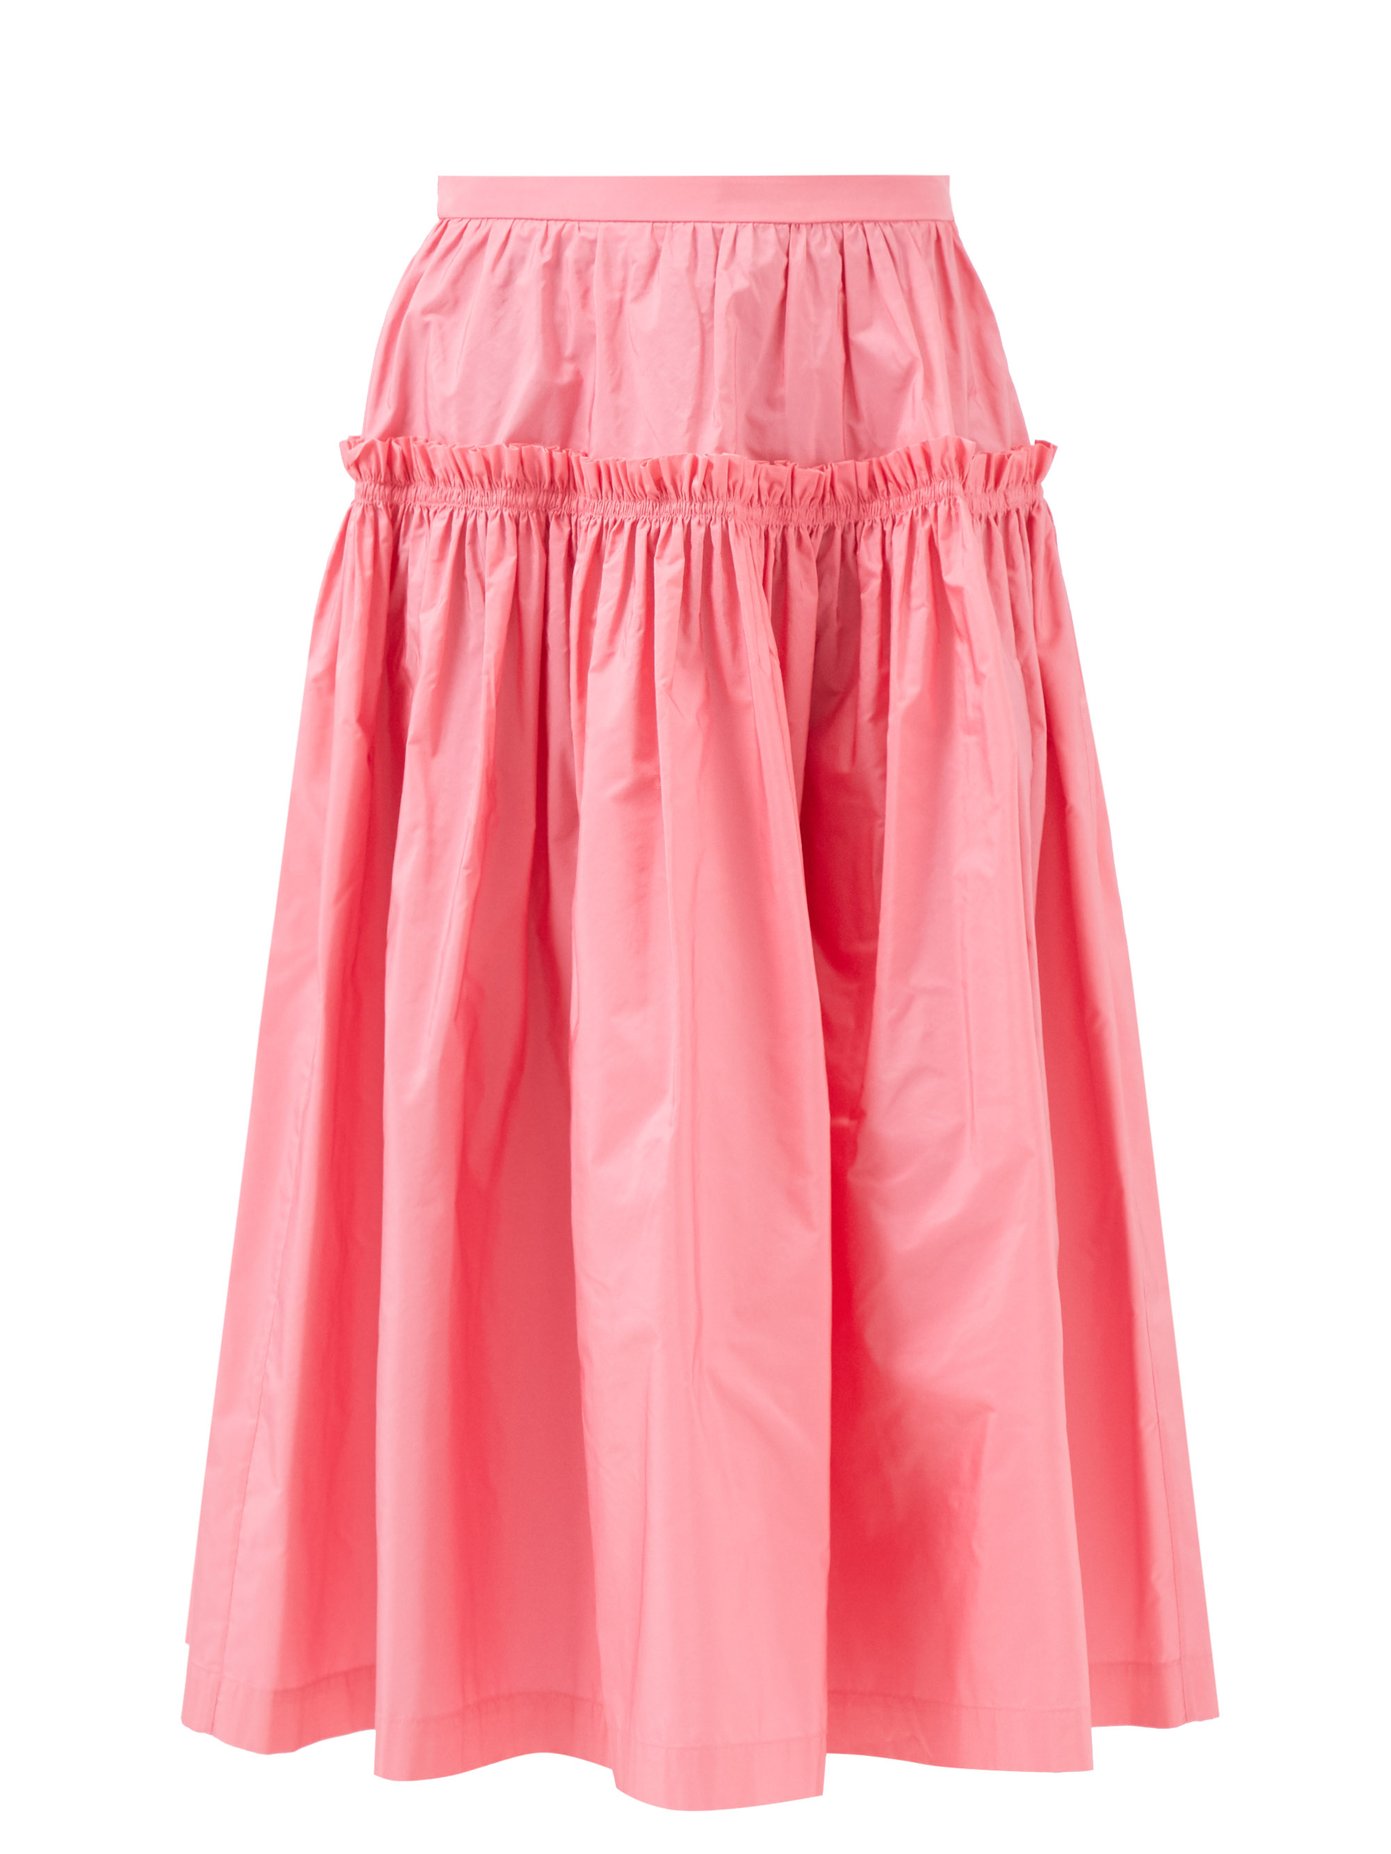 몰리 고다드 스모크드 미디 스커트 Molly Goddard Pink May smocked-taffeta midi skirt